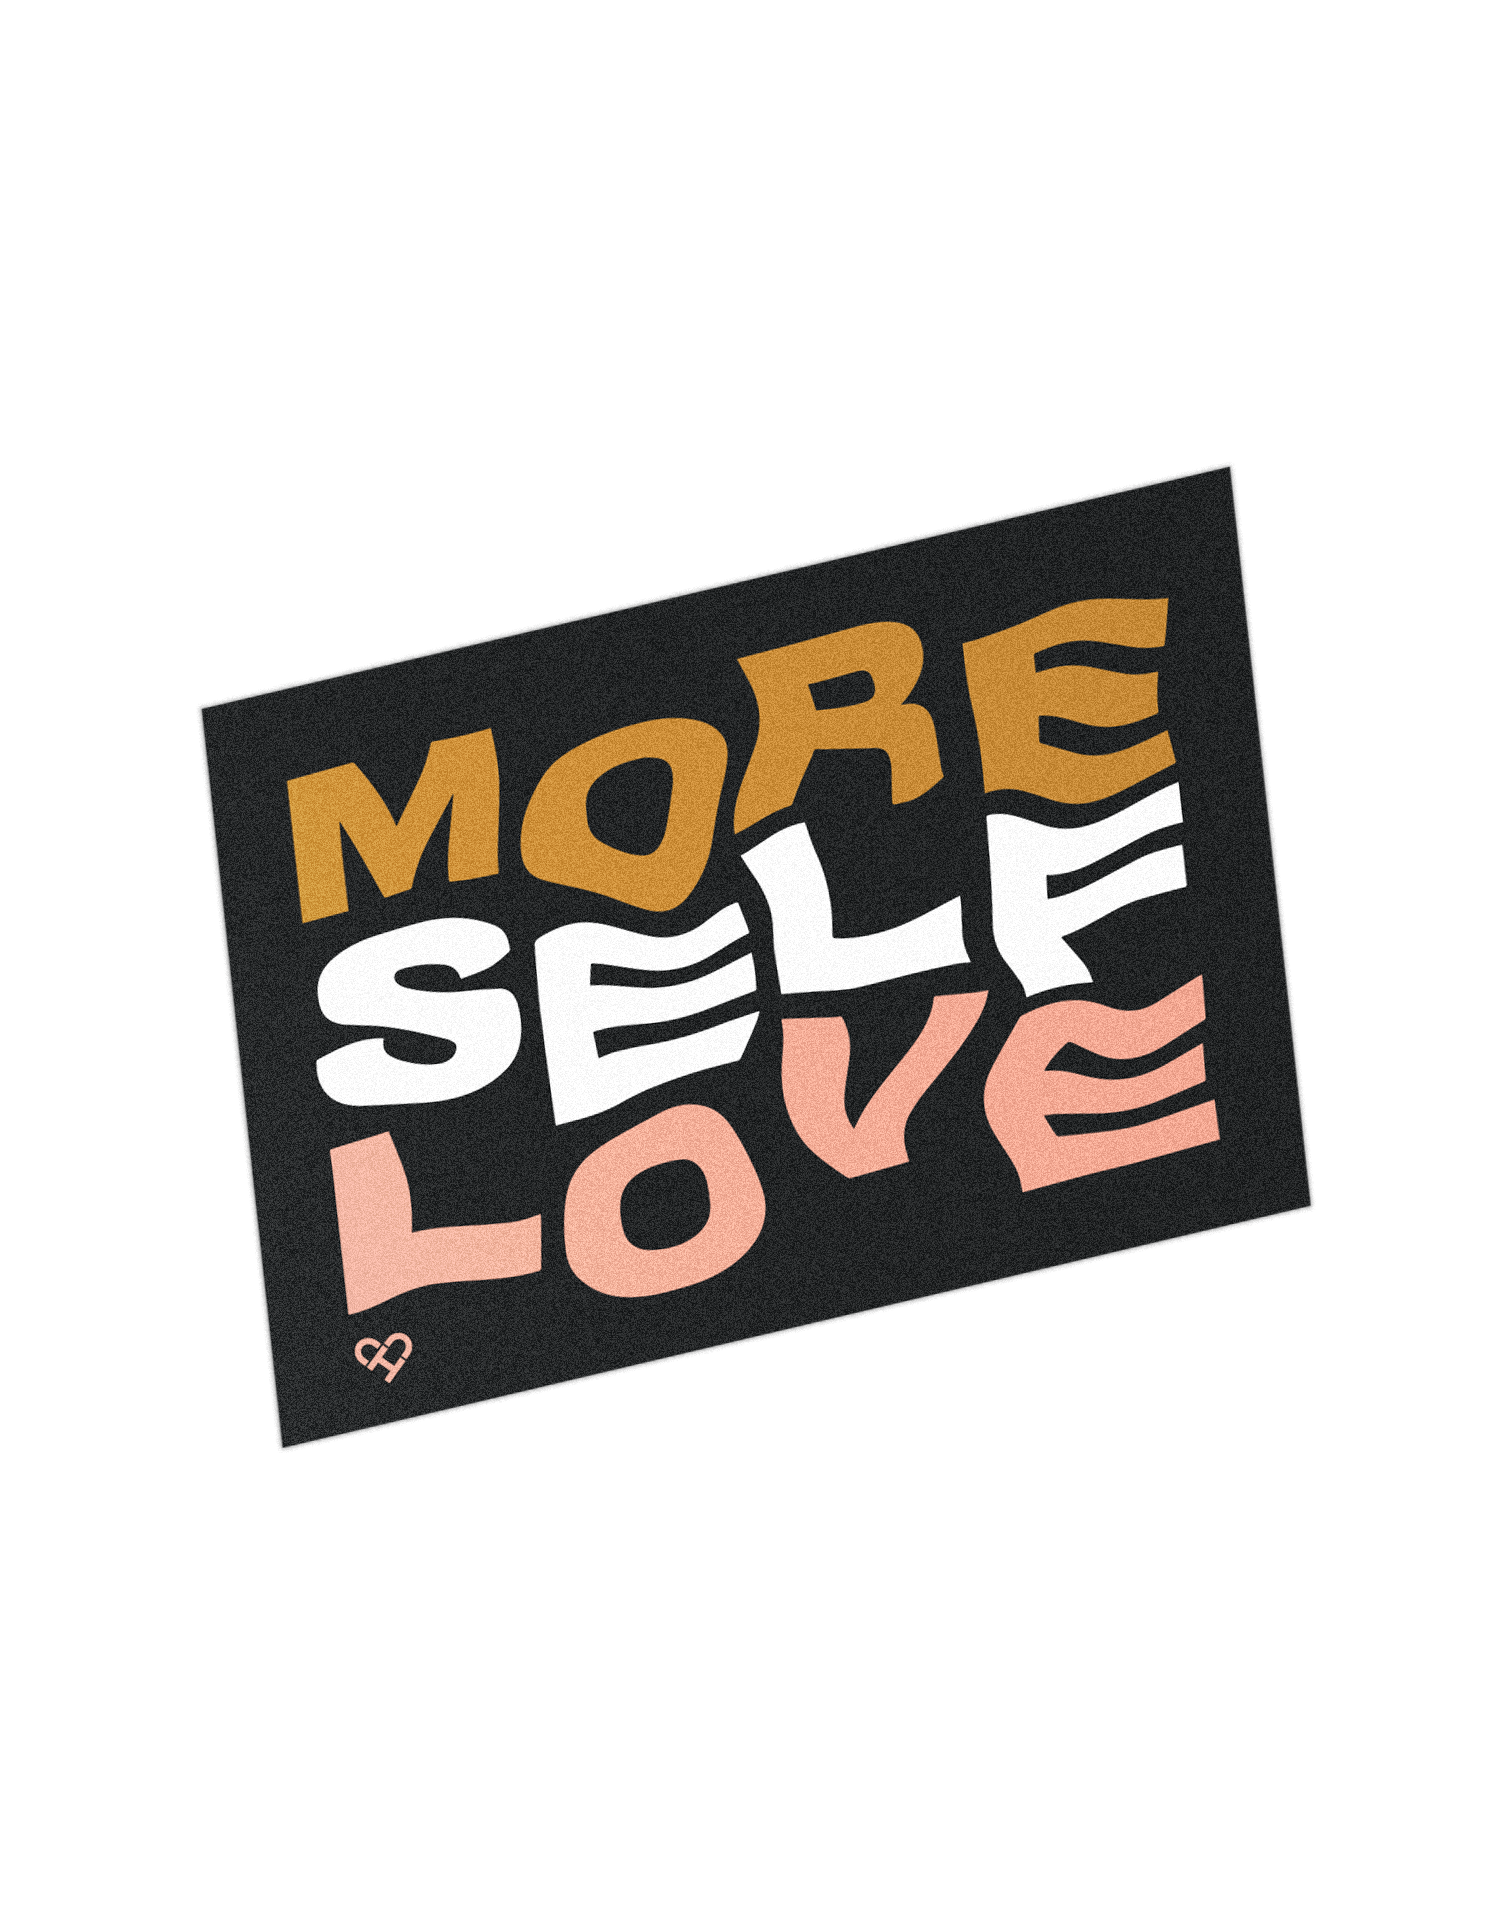 More-self-love.png